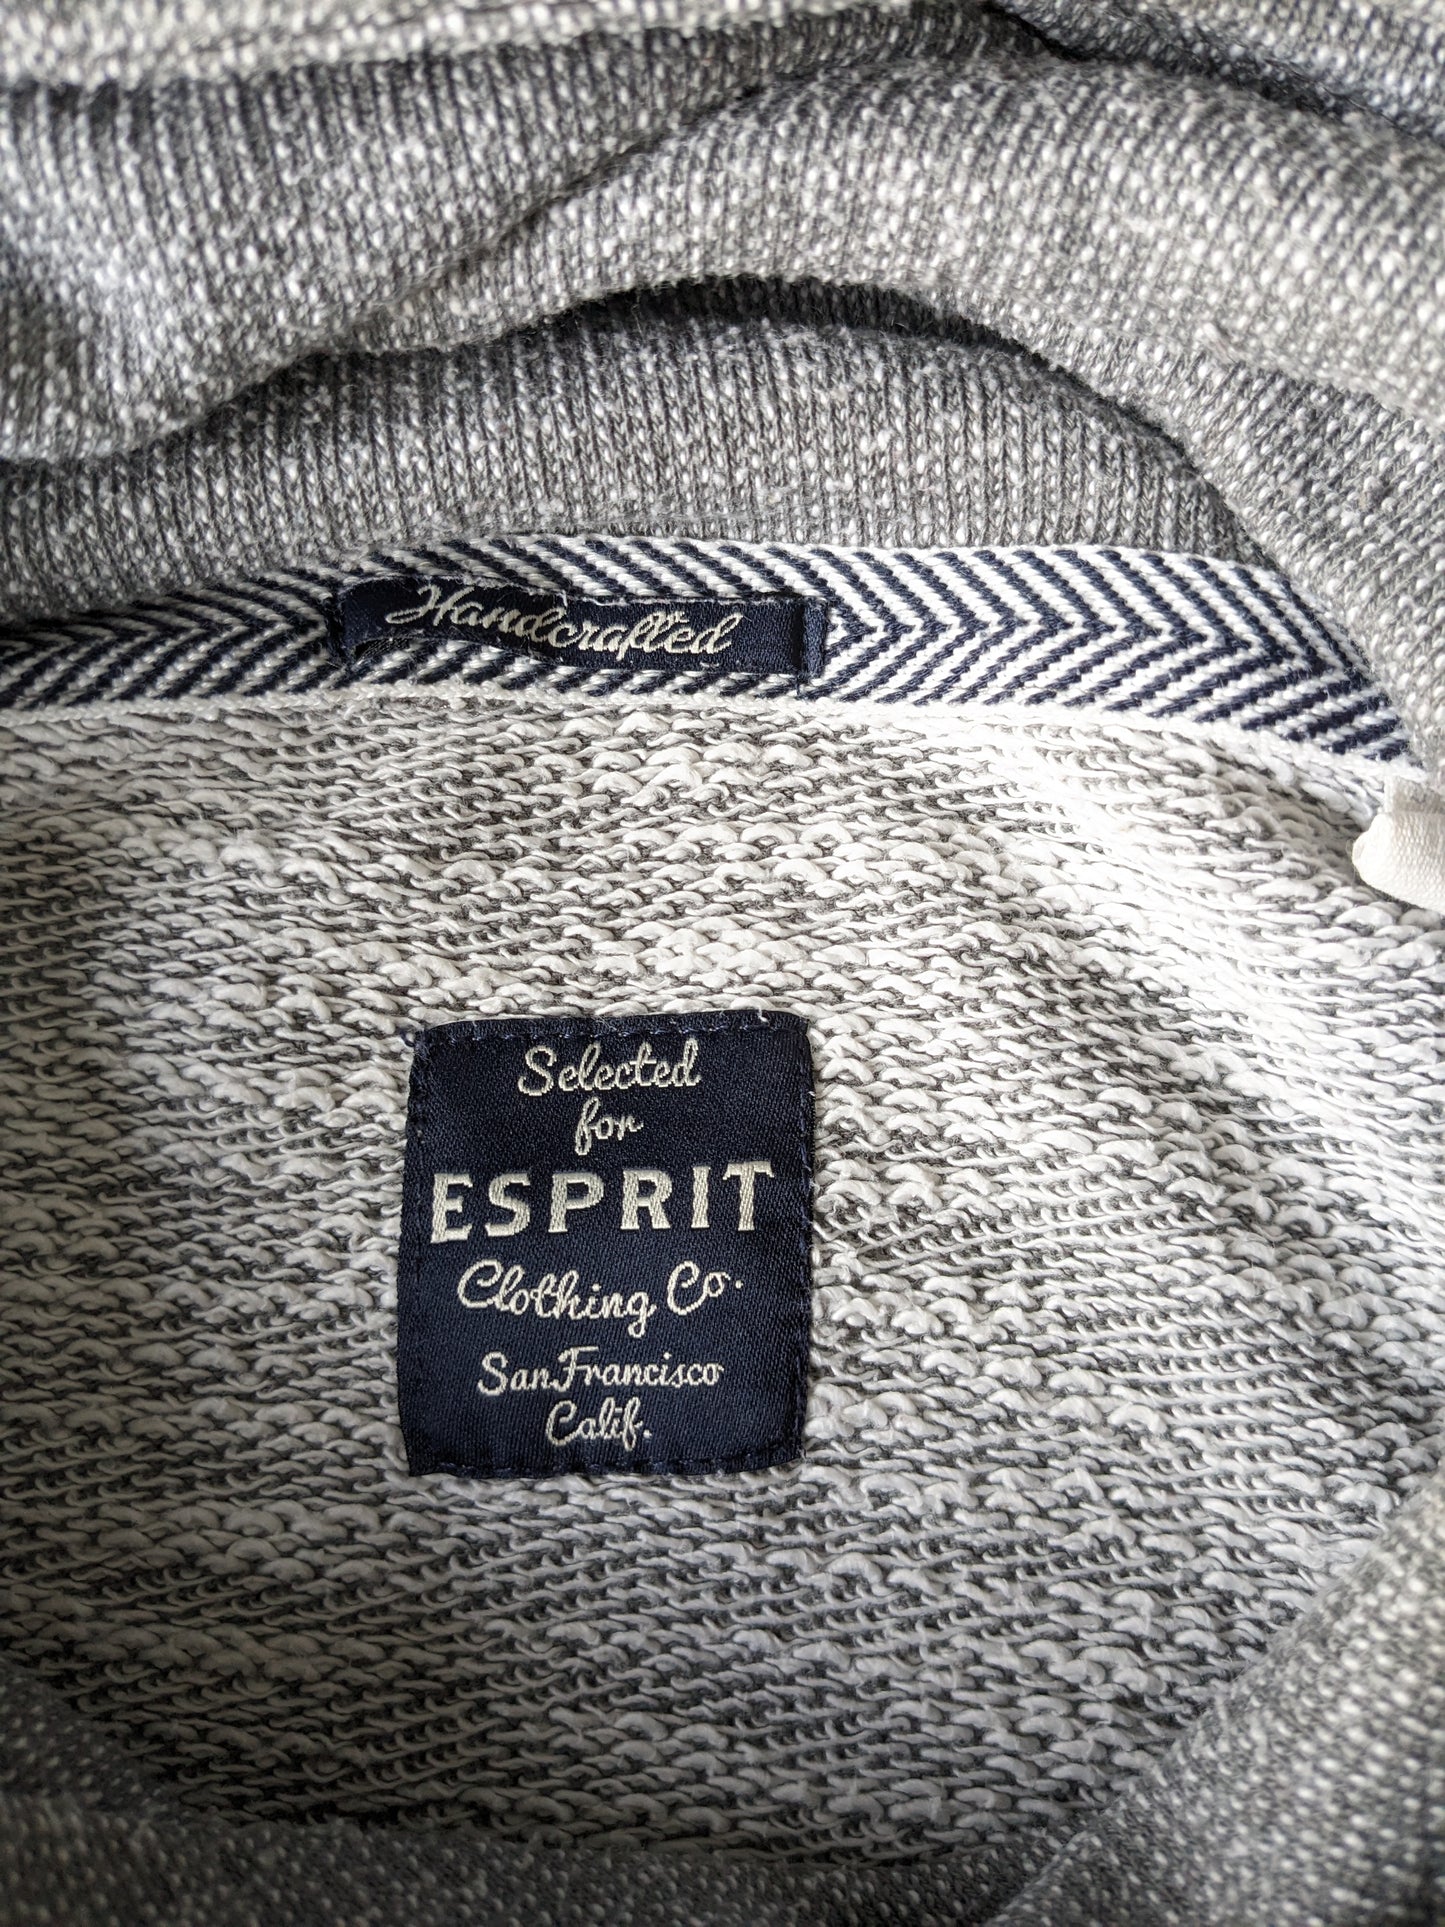 Maglione Esprit con dolcevita sportiva. Bianco grigio miscelato. Taglia L.